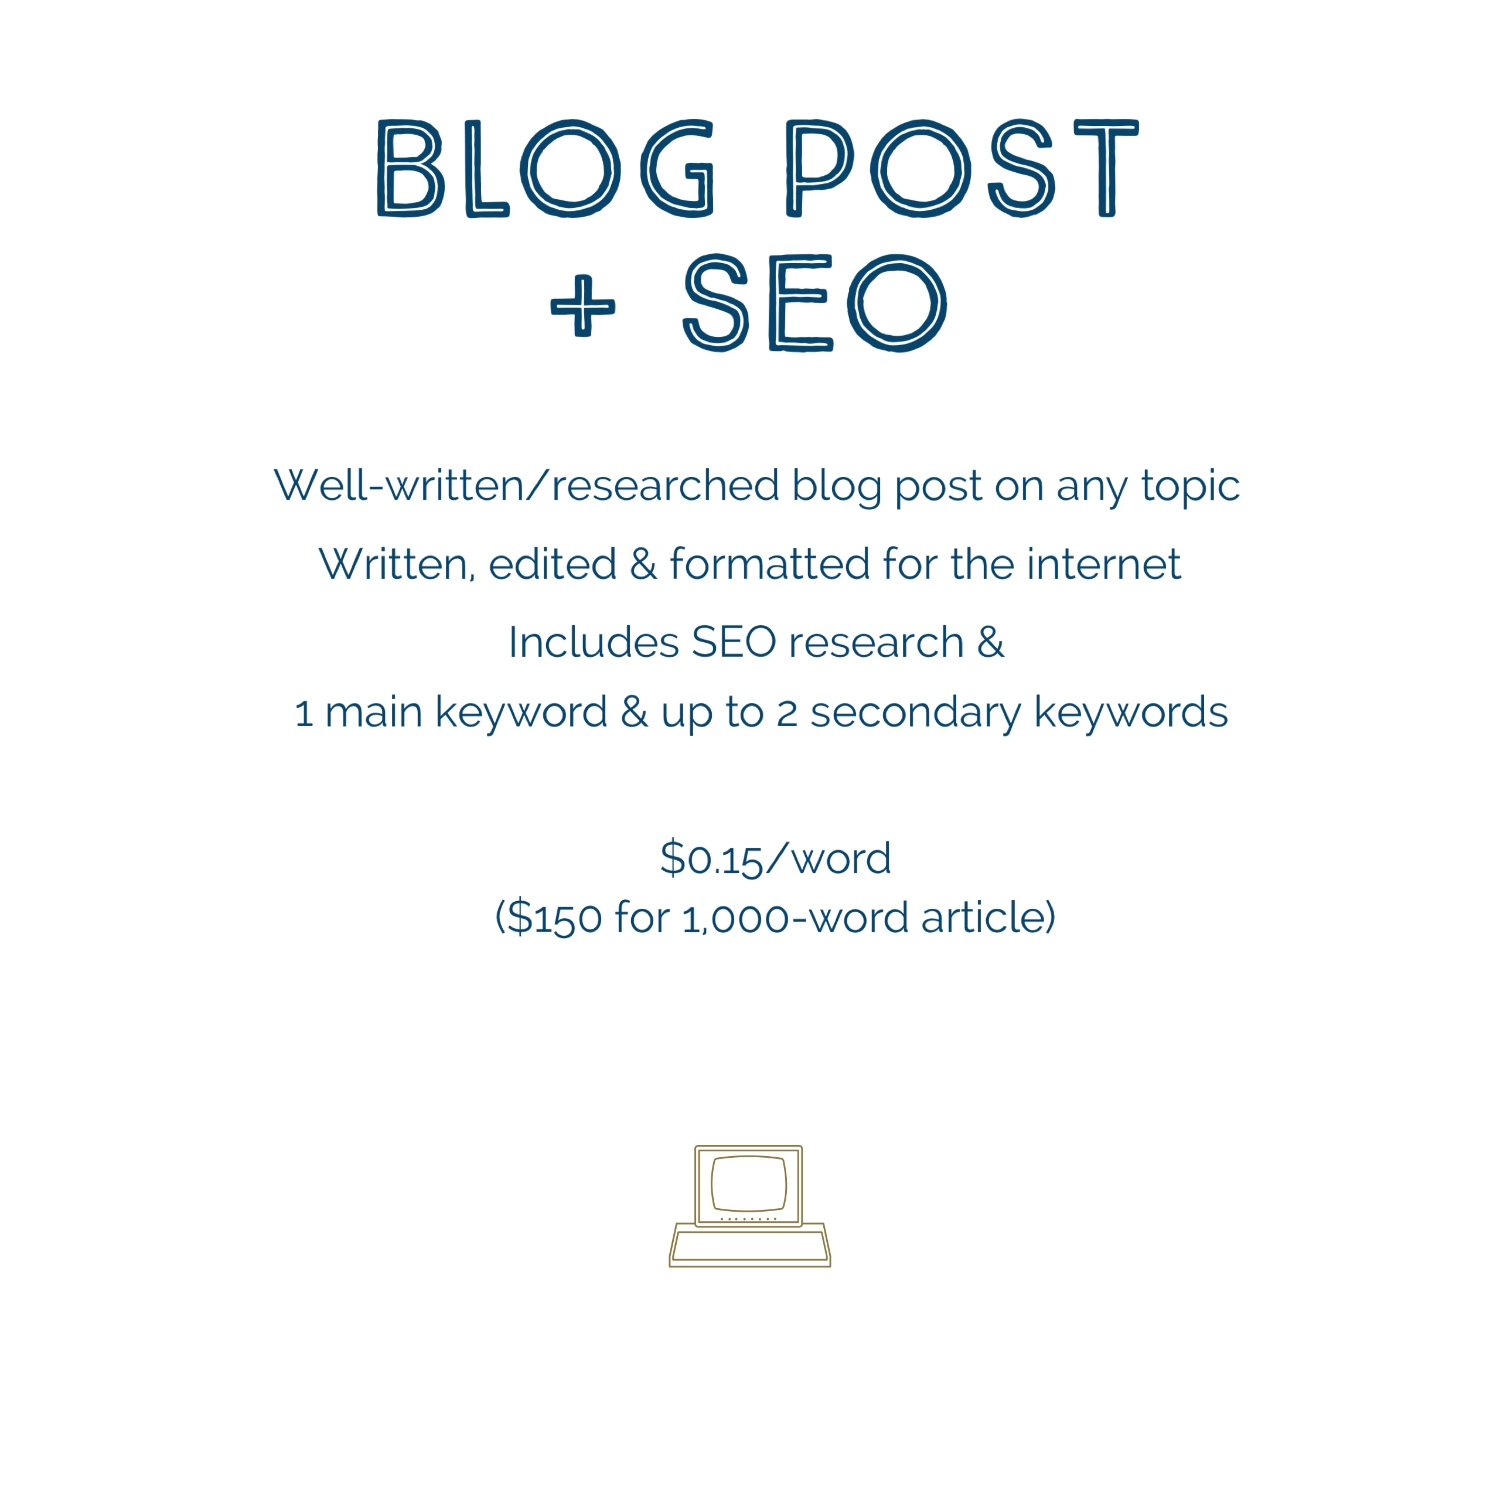 content seo services - blog post + seo